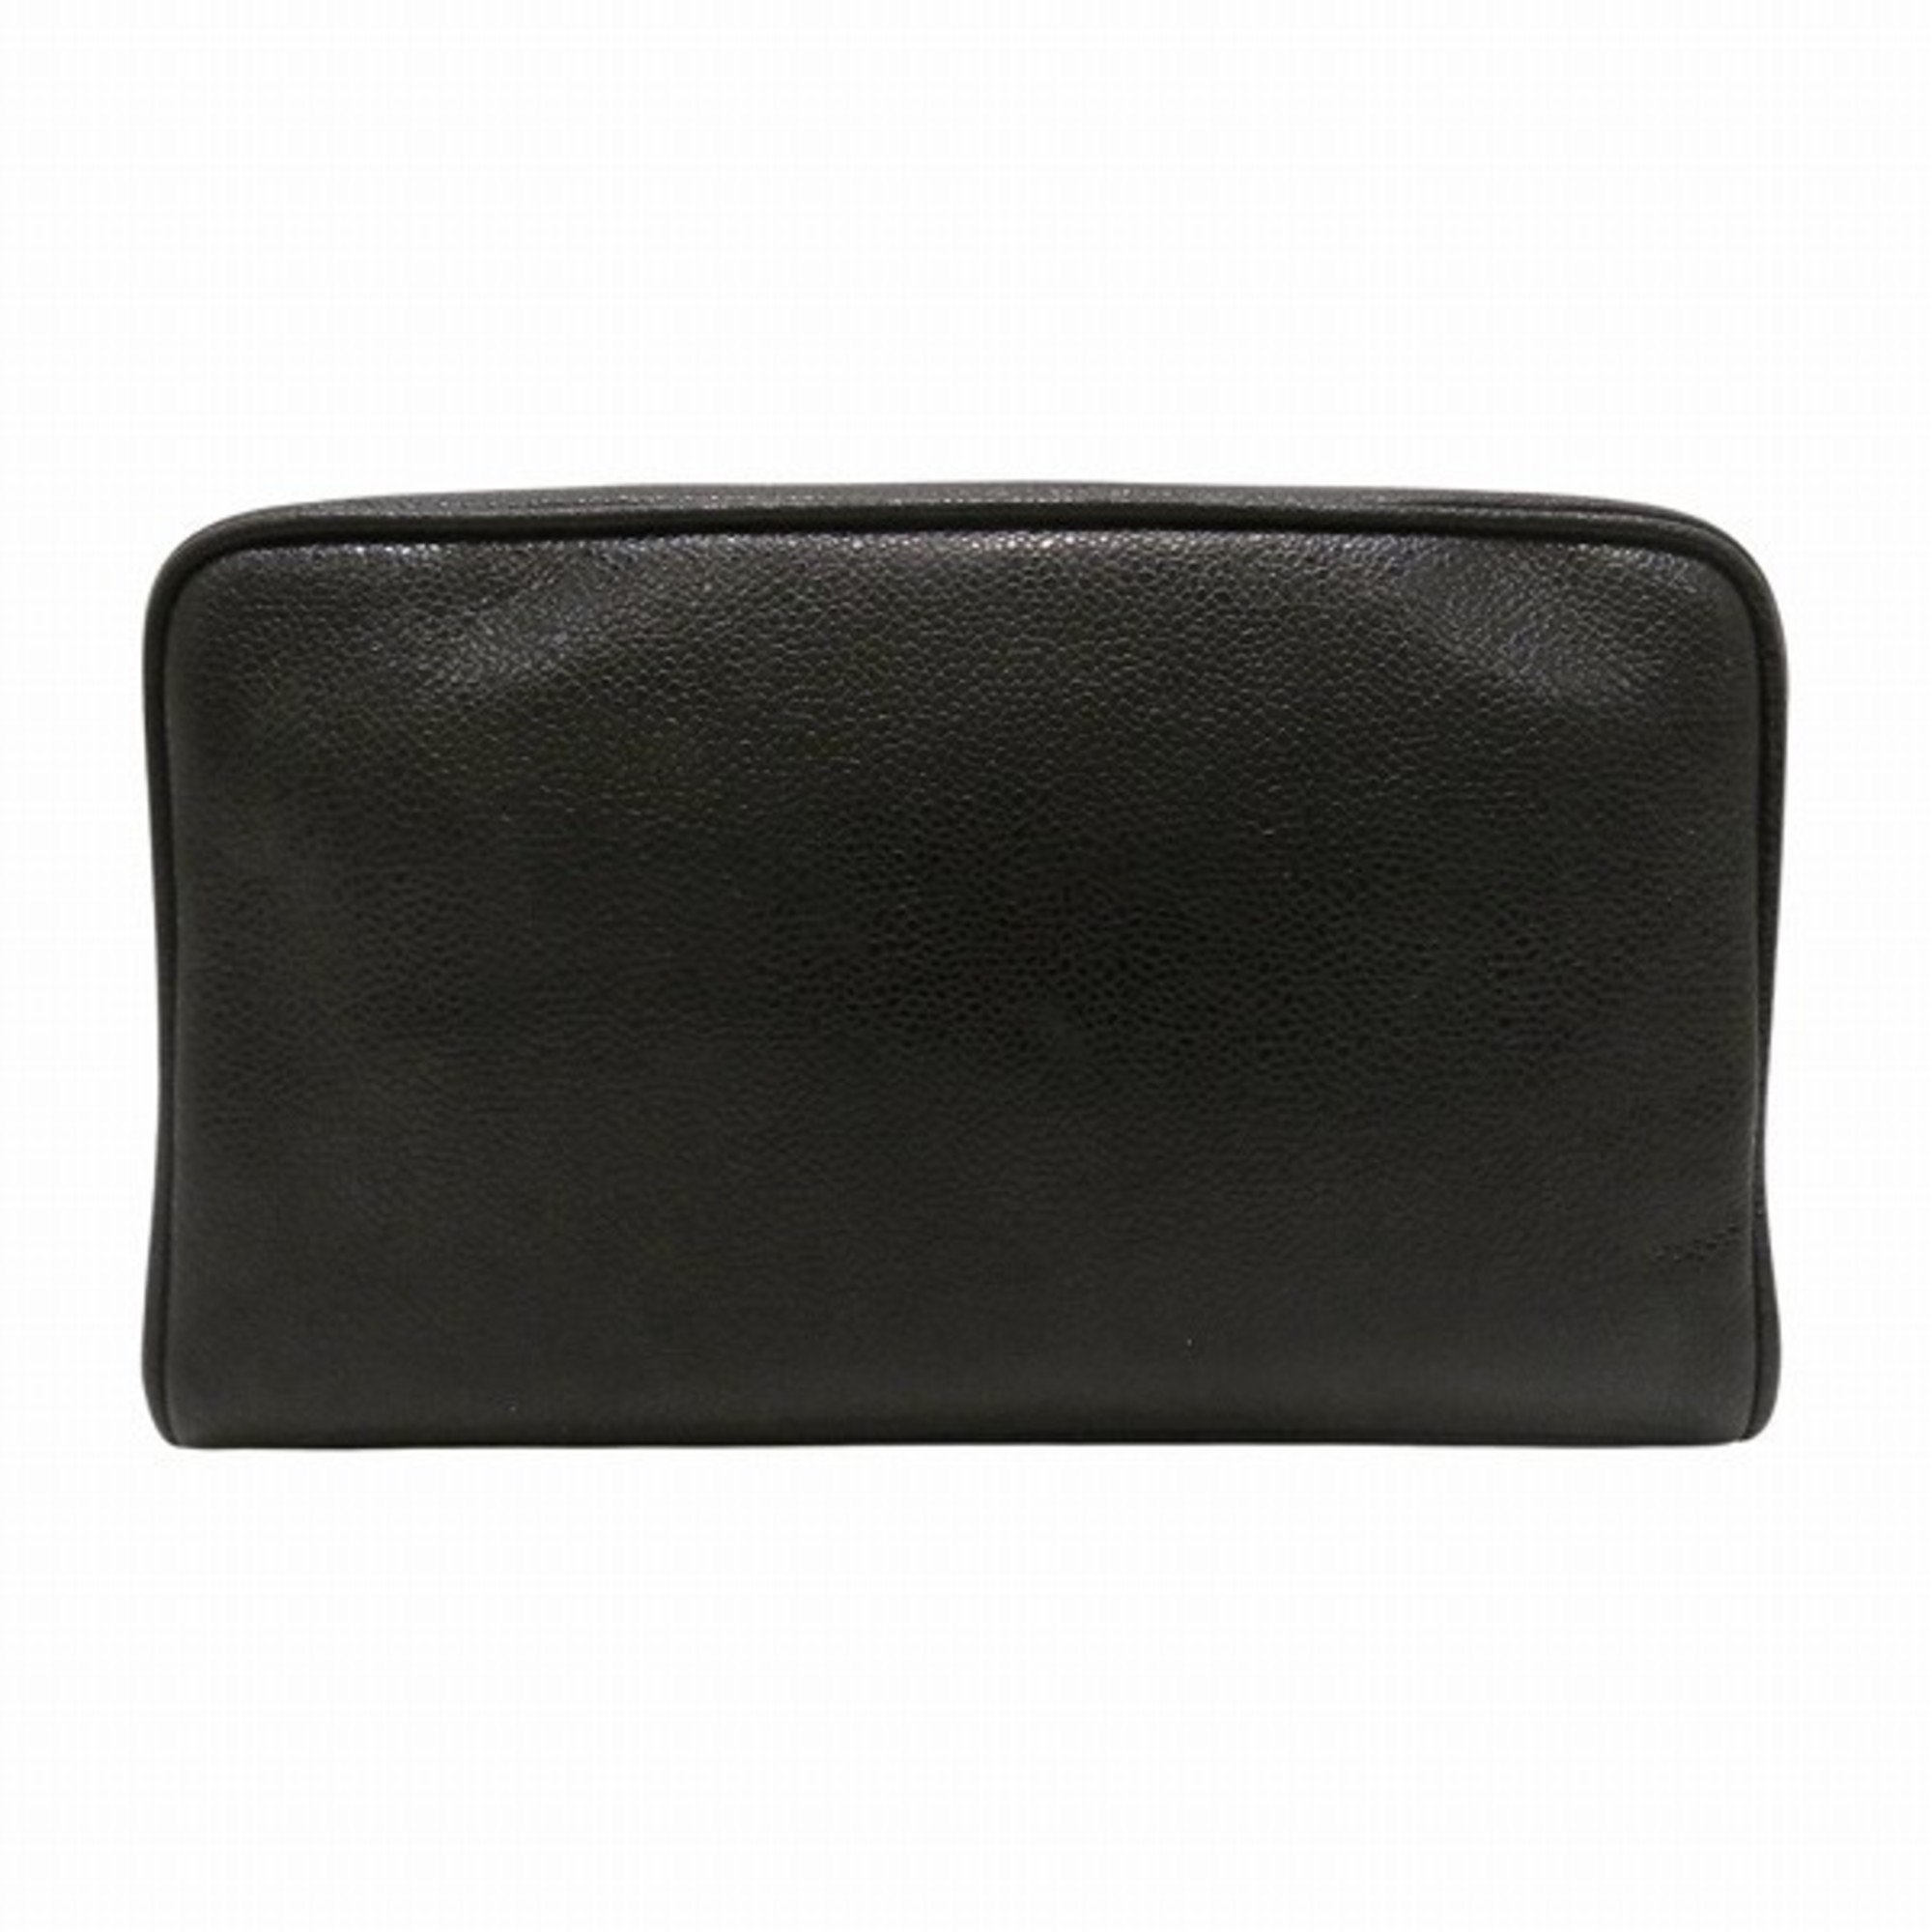 CHANEL Caviar Skin Coco Mark Accessory Pouch Women's Bag